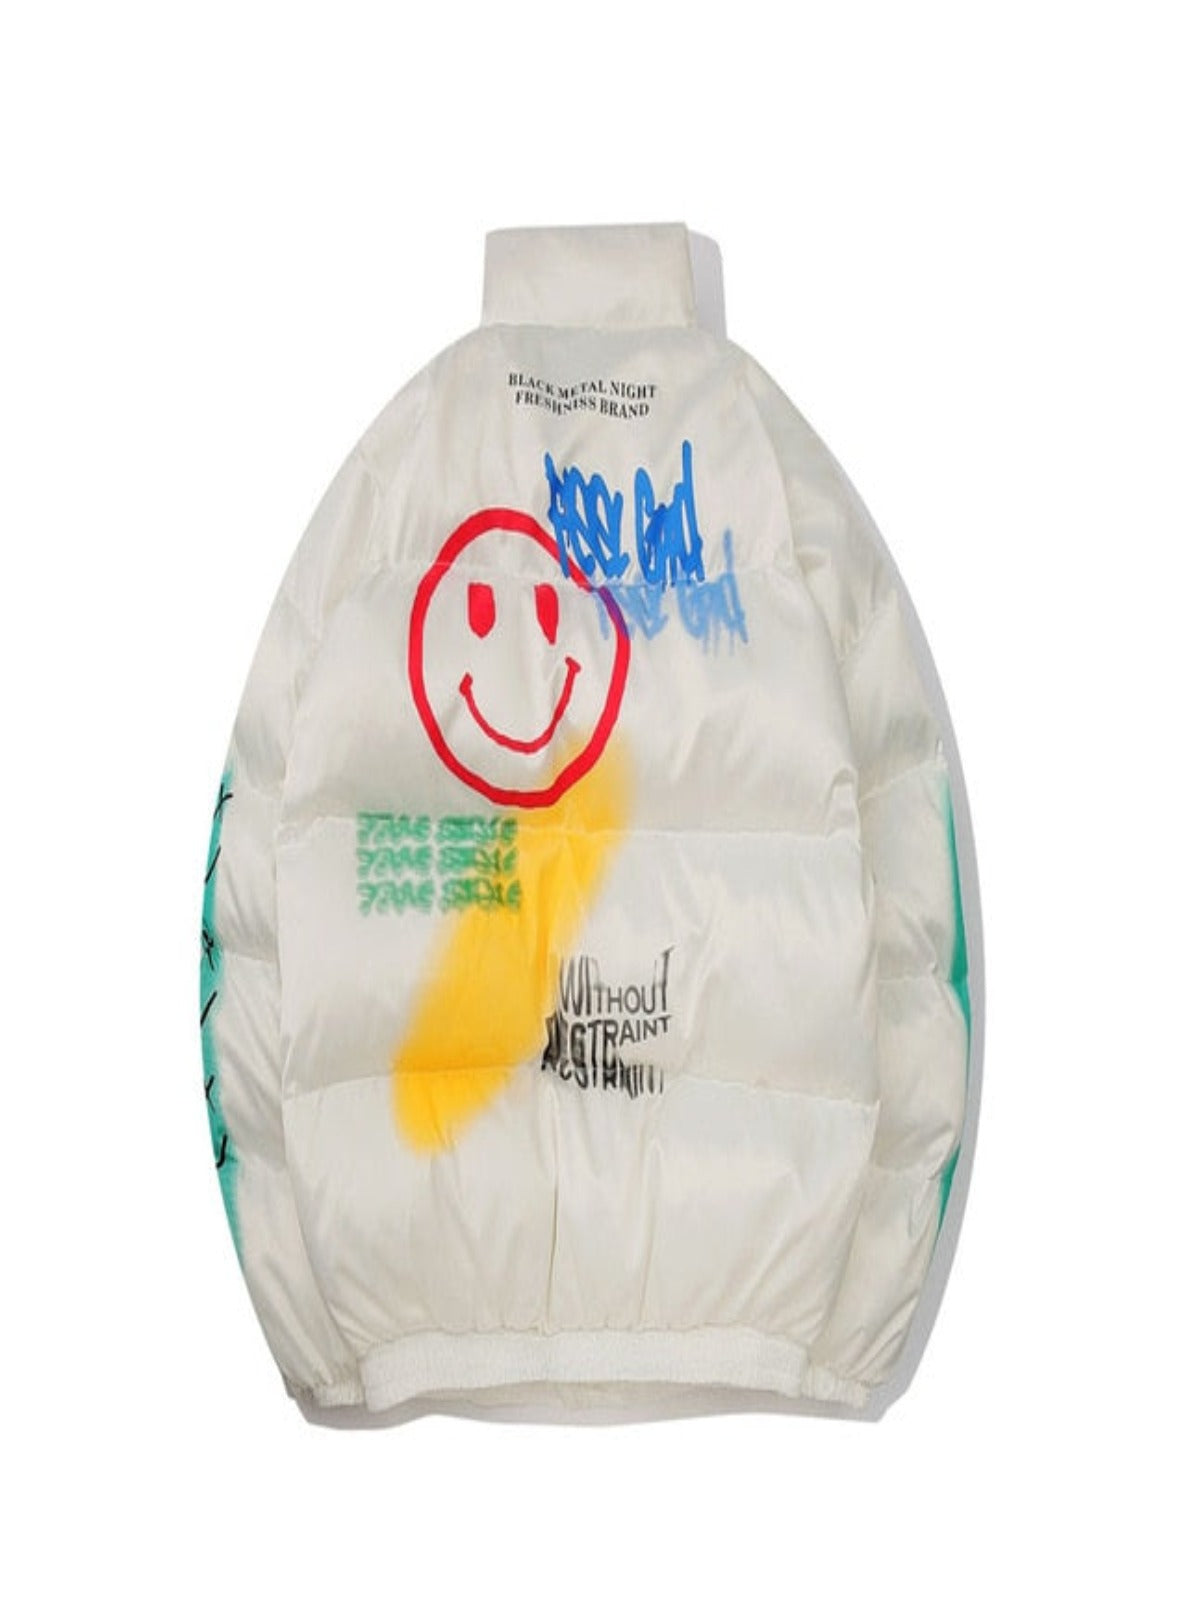 Graffiti Print Puffer Cotton Parka Jacket